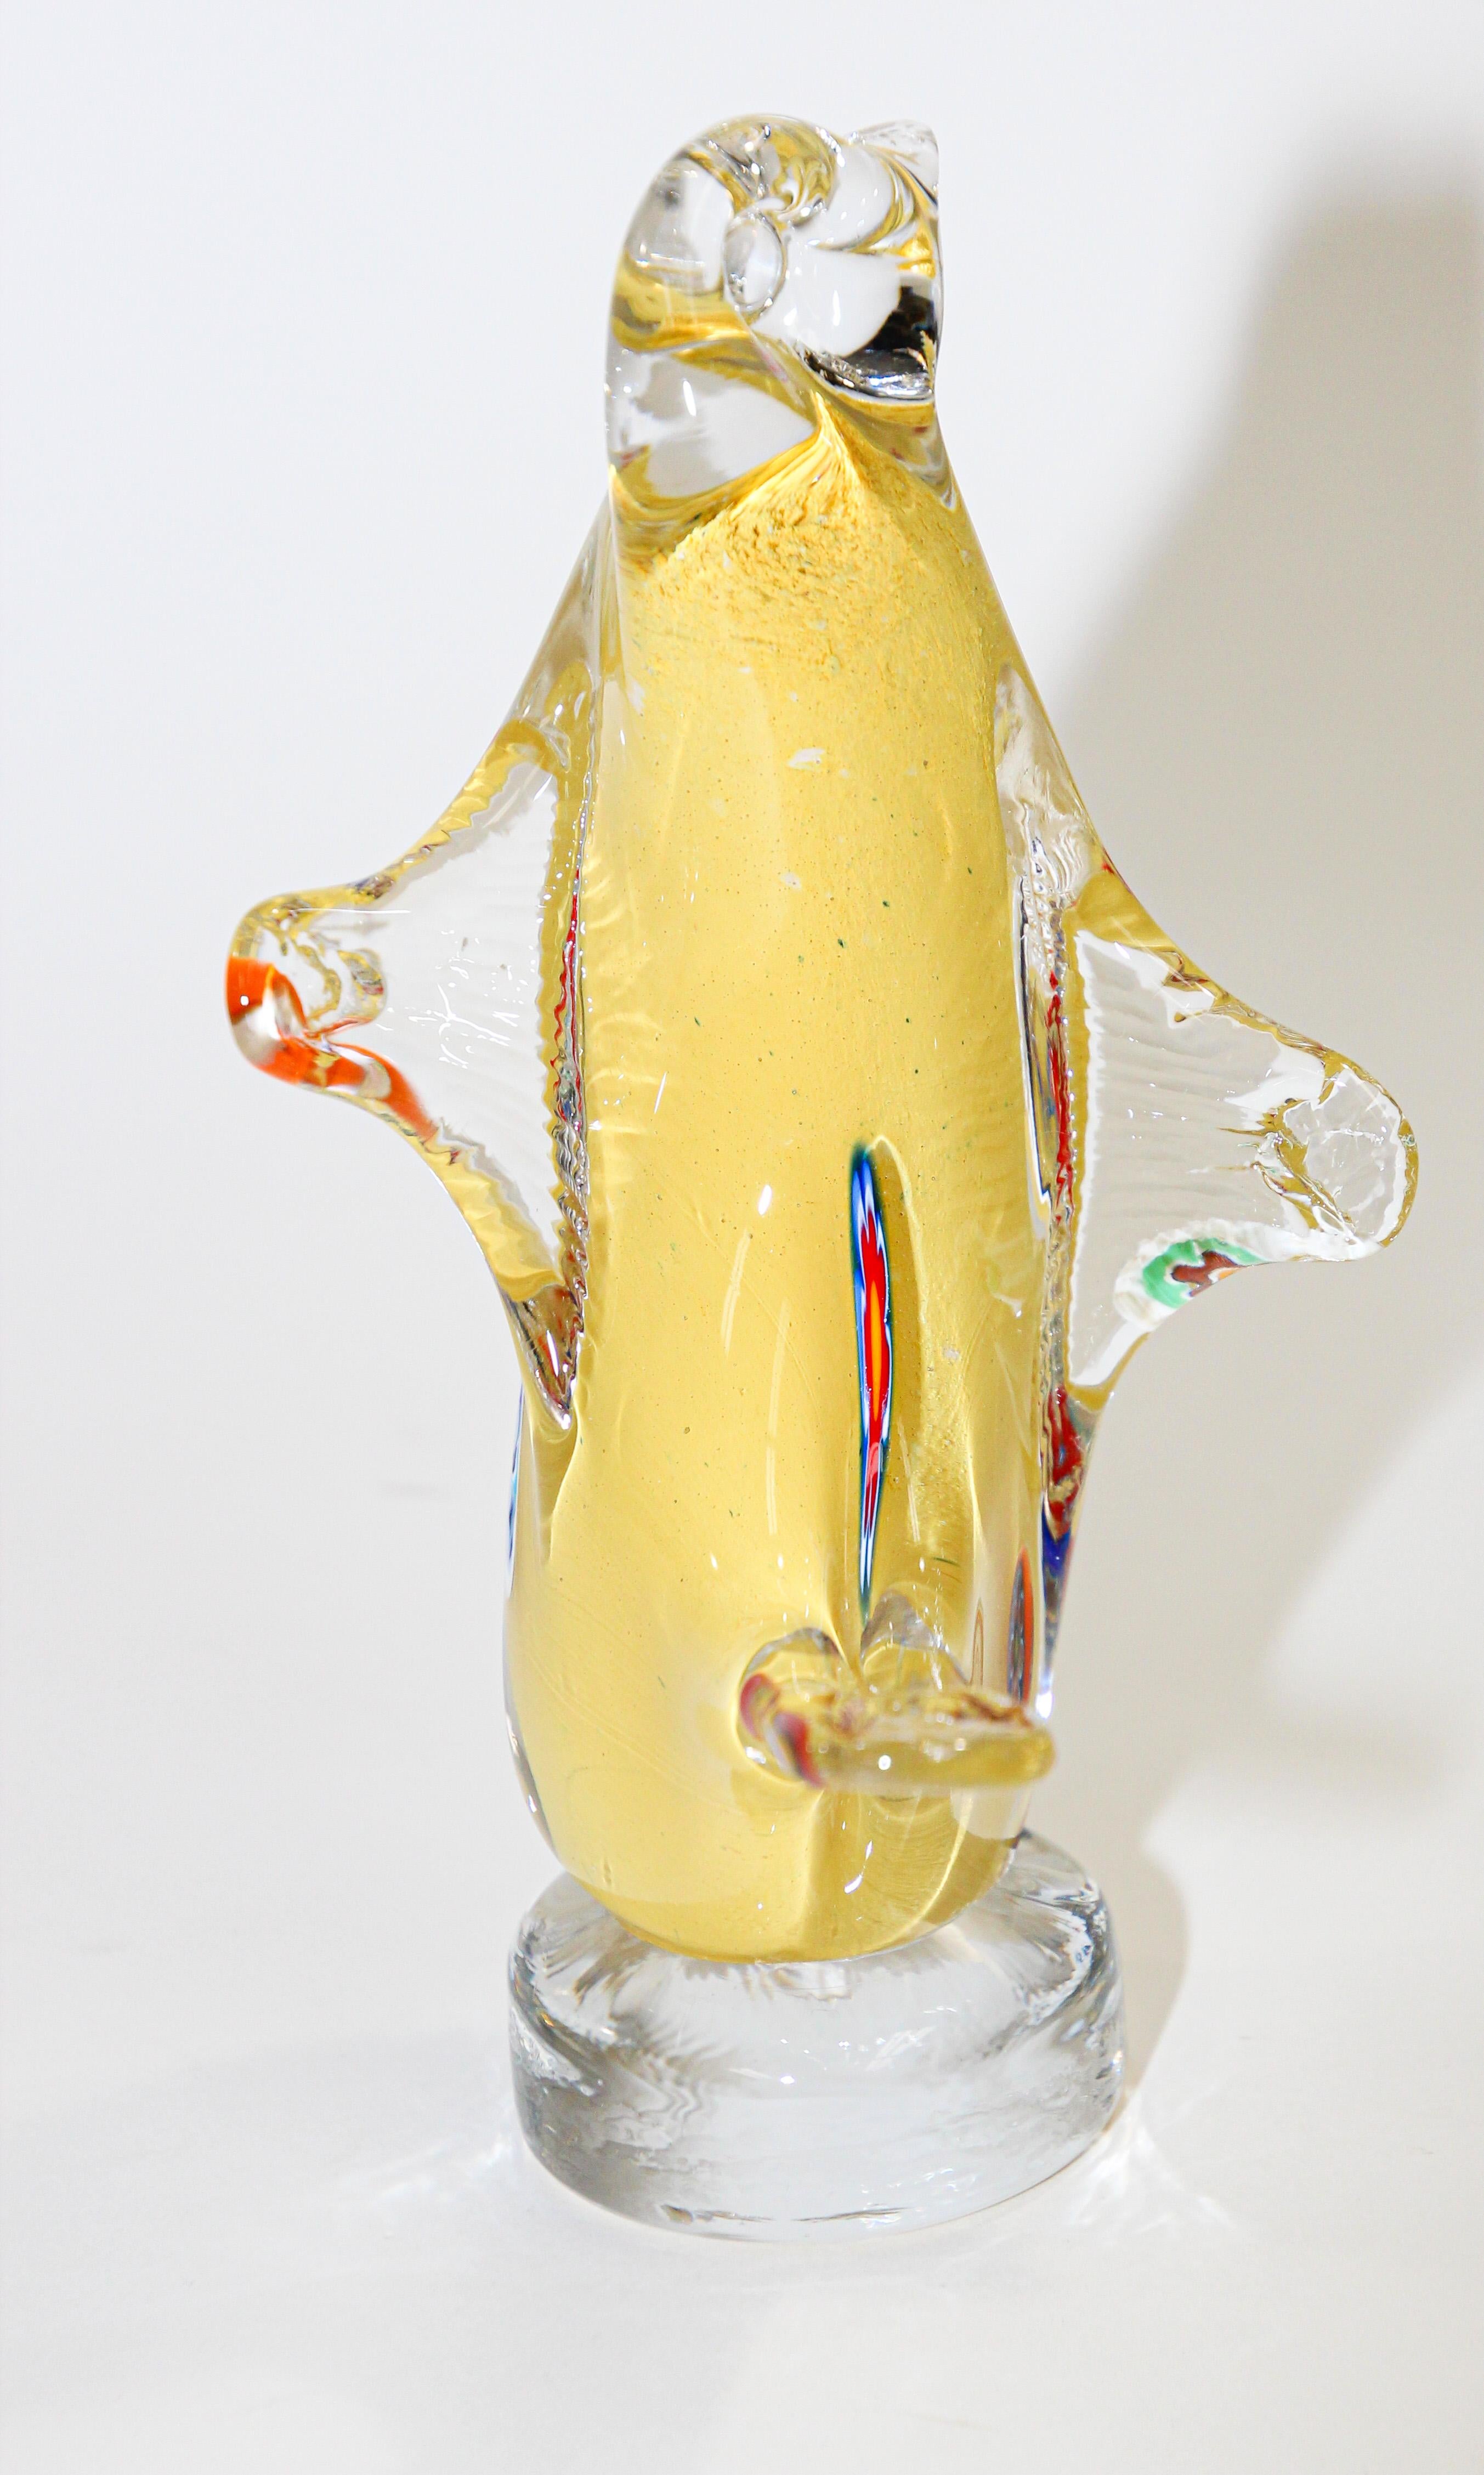 Vintage Murano art glass hand blown sculpture bird figurine.
Magnifique oiseau en verre soufflé à la main, datant du milieu du siècle dernier.
Le corps des bulles en verre d'art italien décoré de bulles jaunes et blanches.
Époque Mid-Century